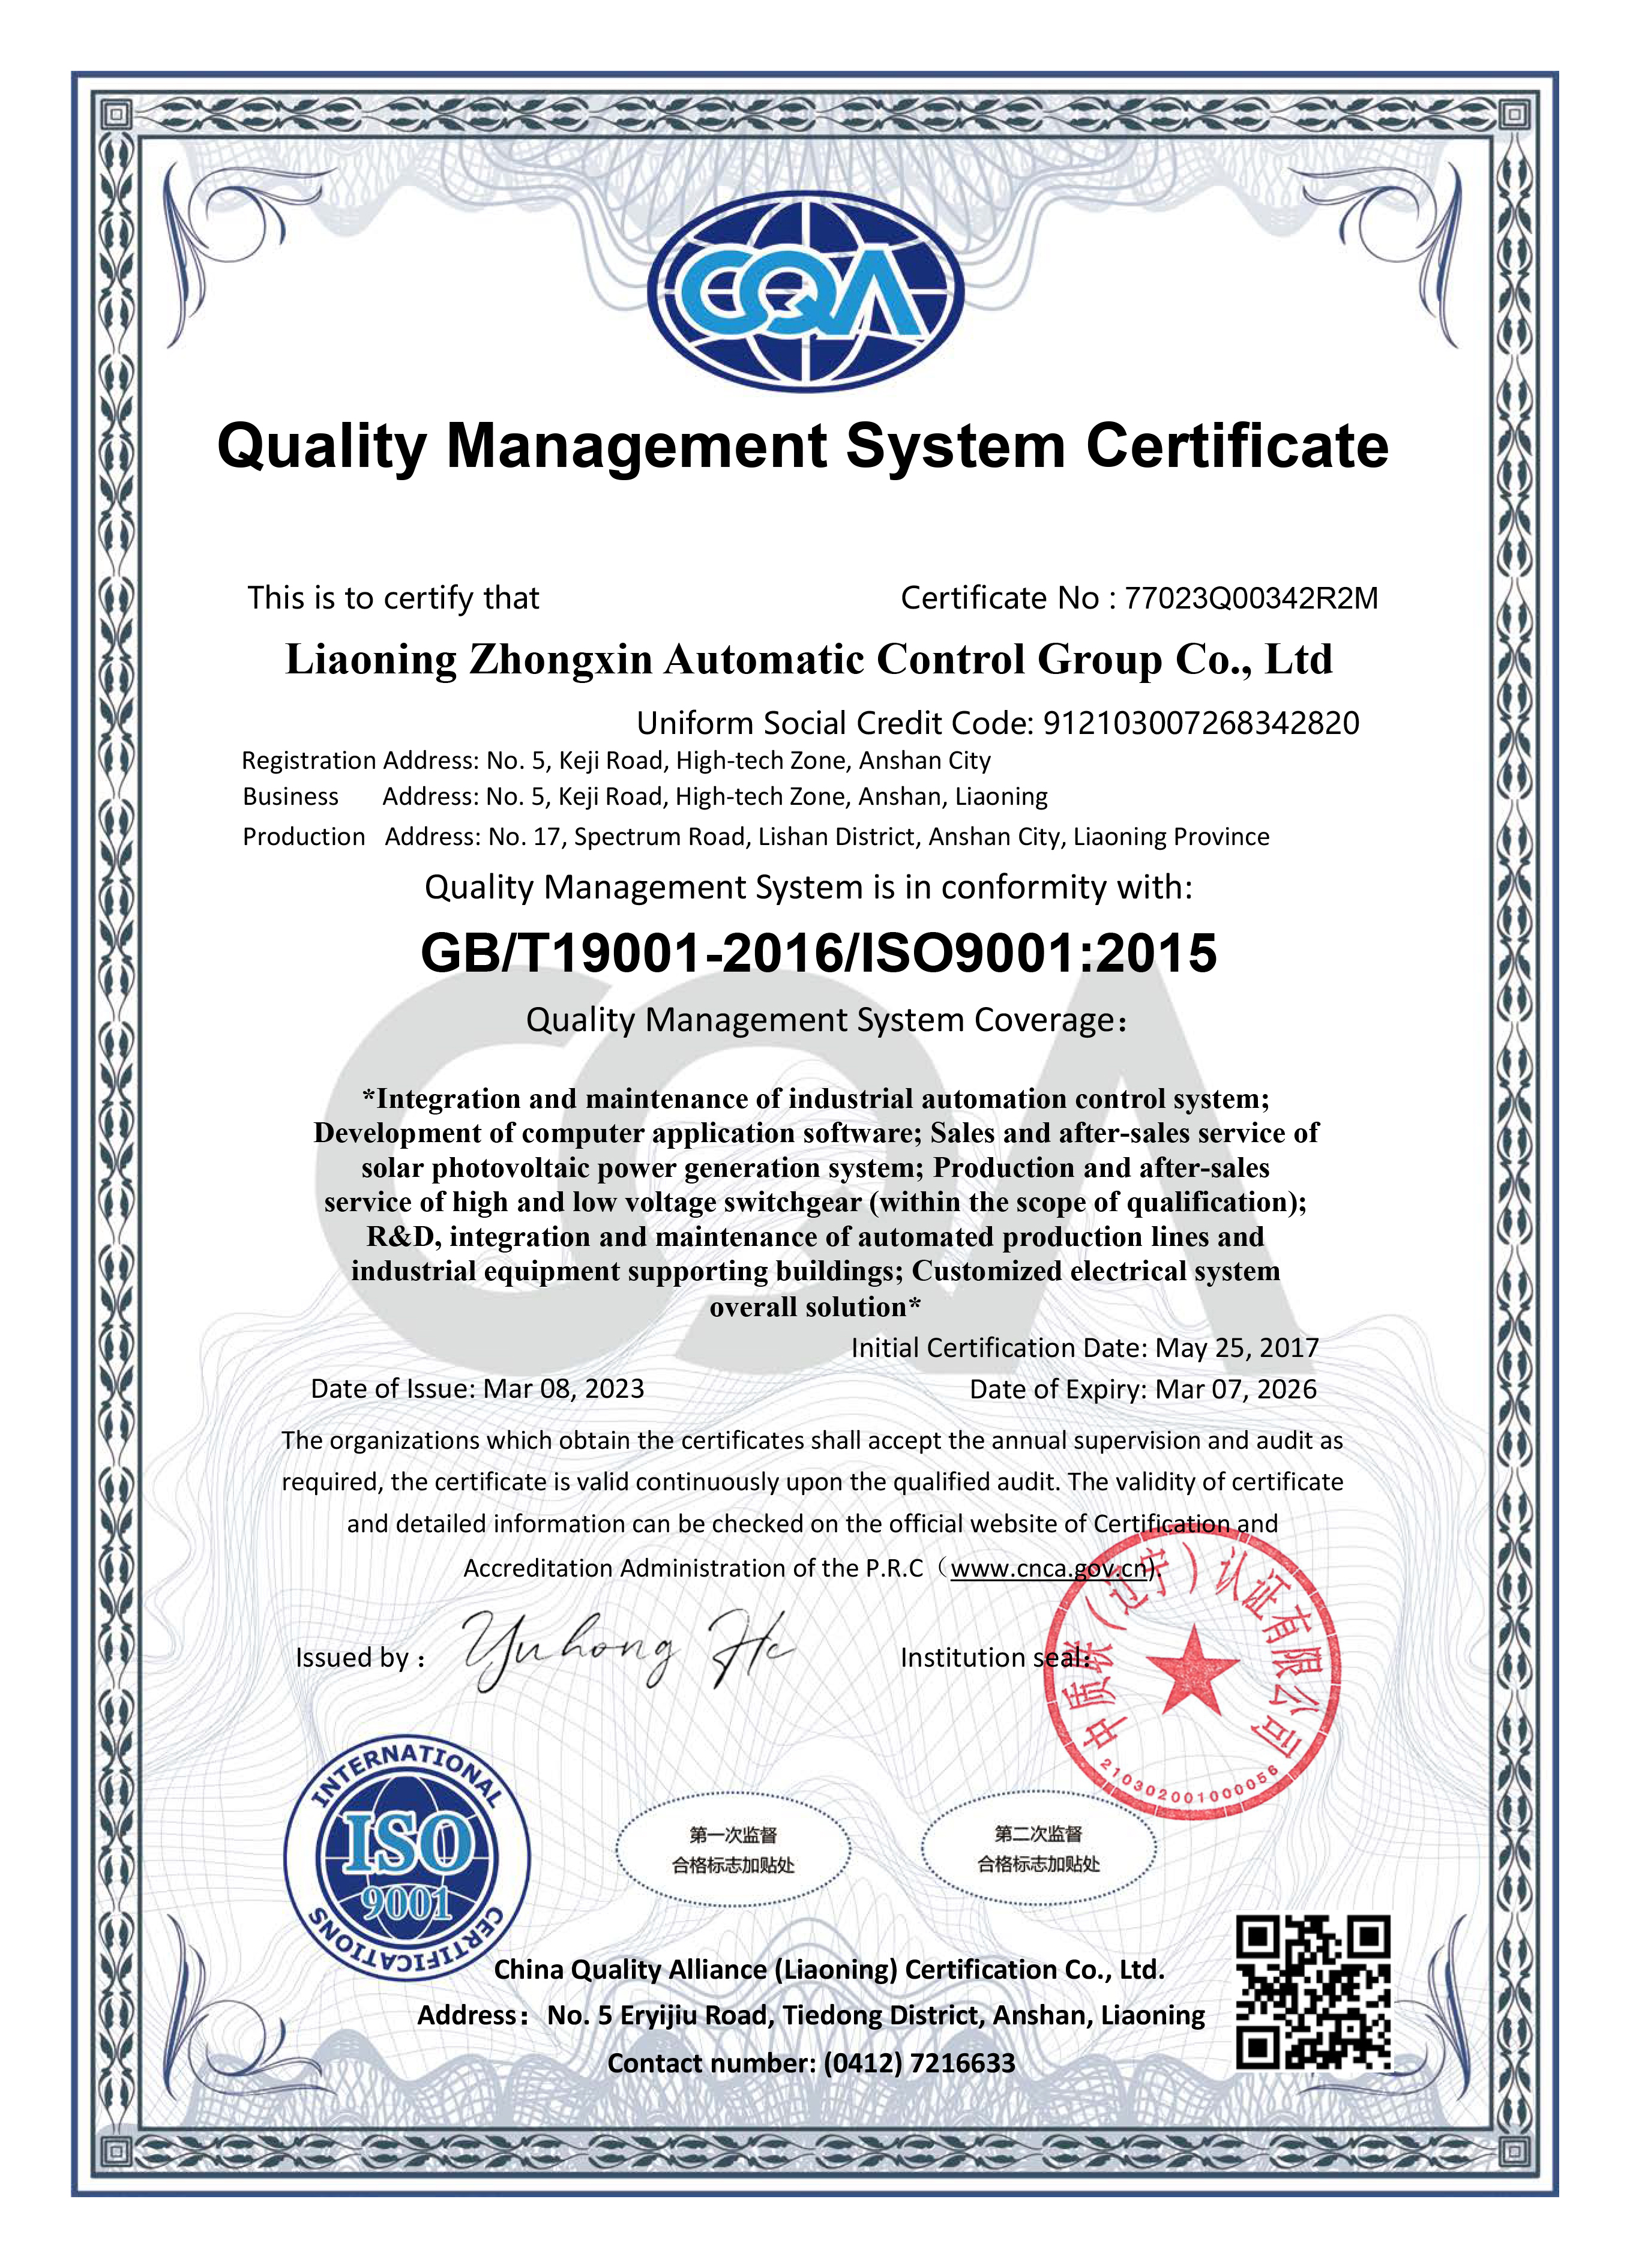 质量管理体系认证证书-英文-资质证书-辽宁中新